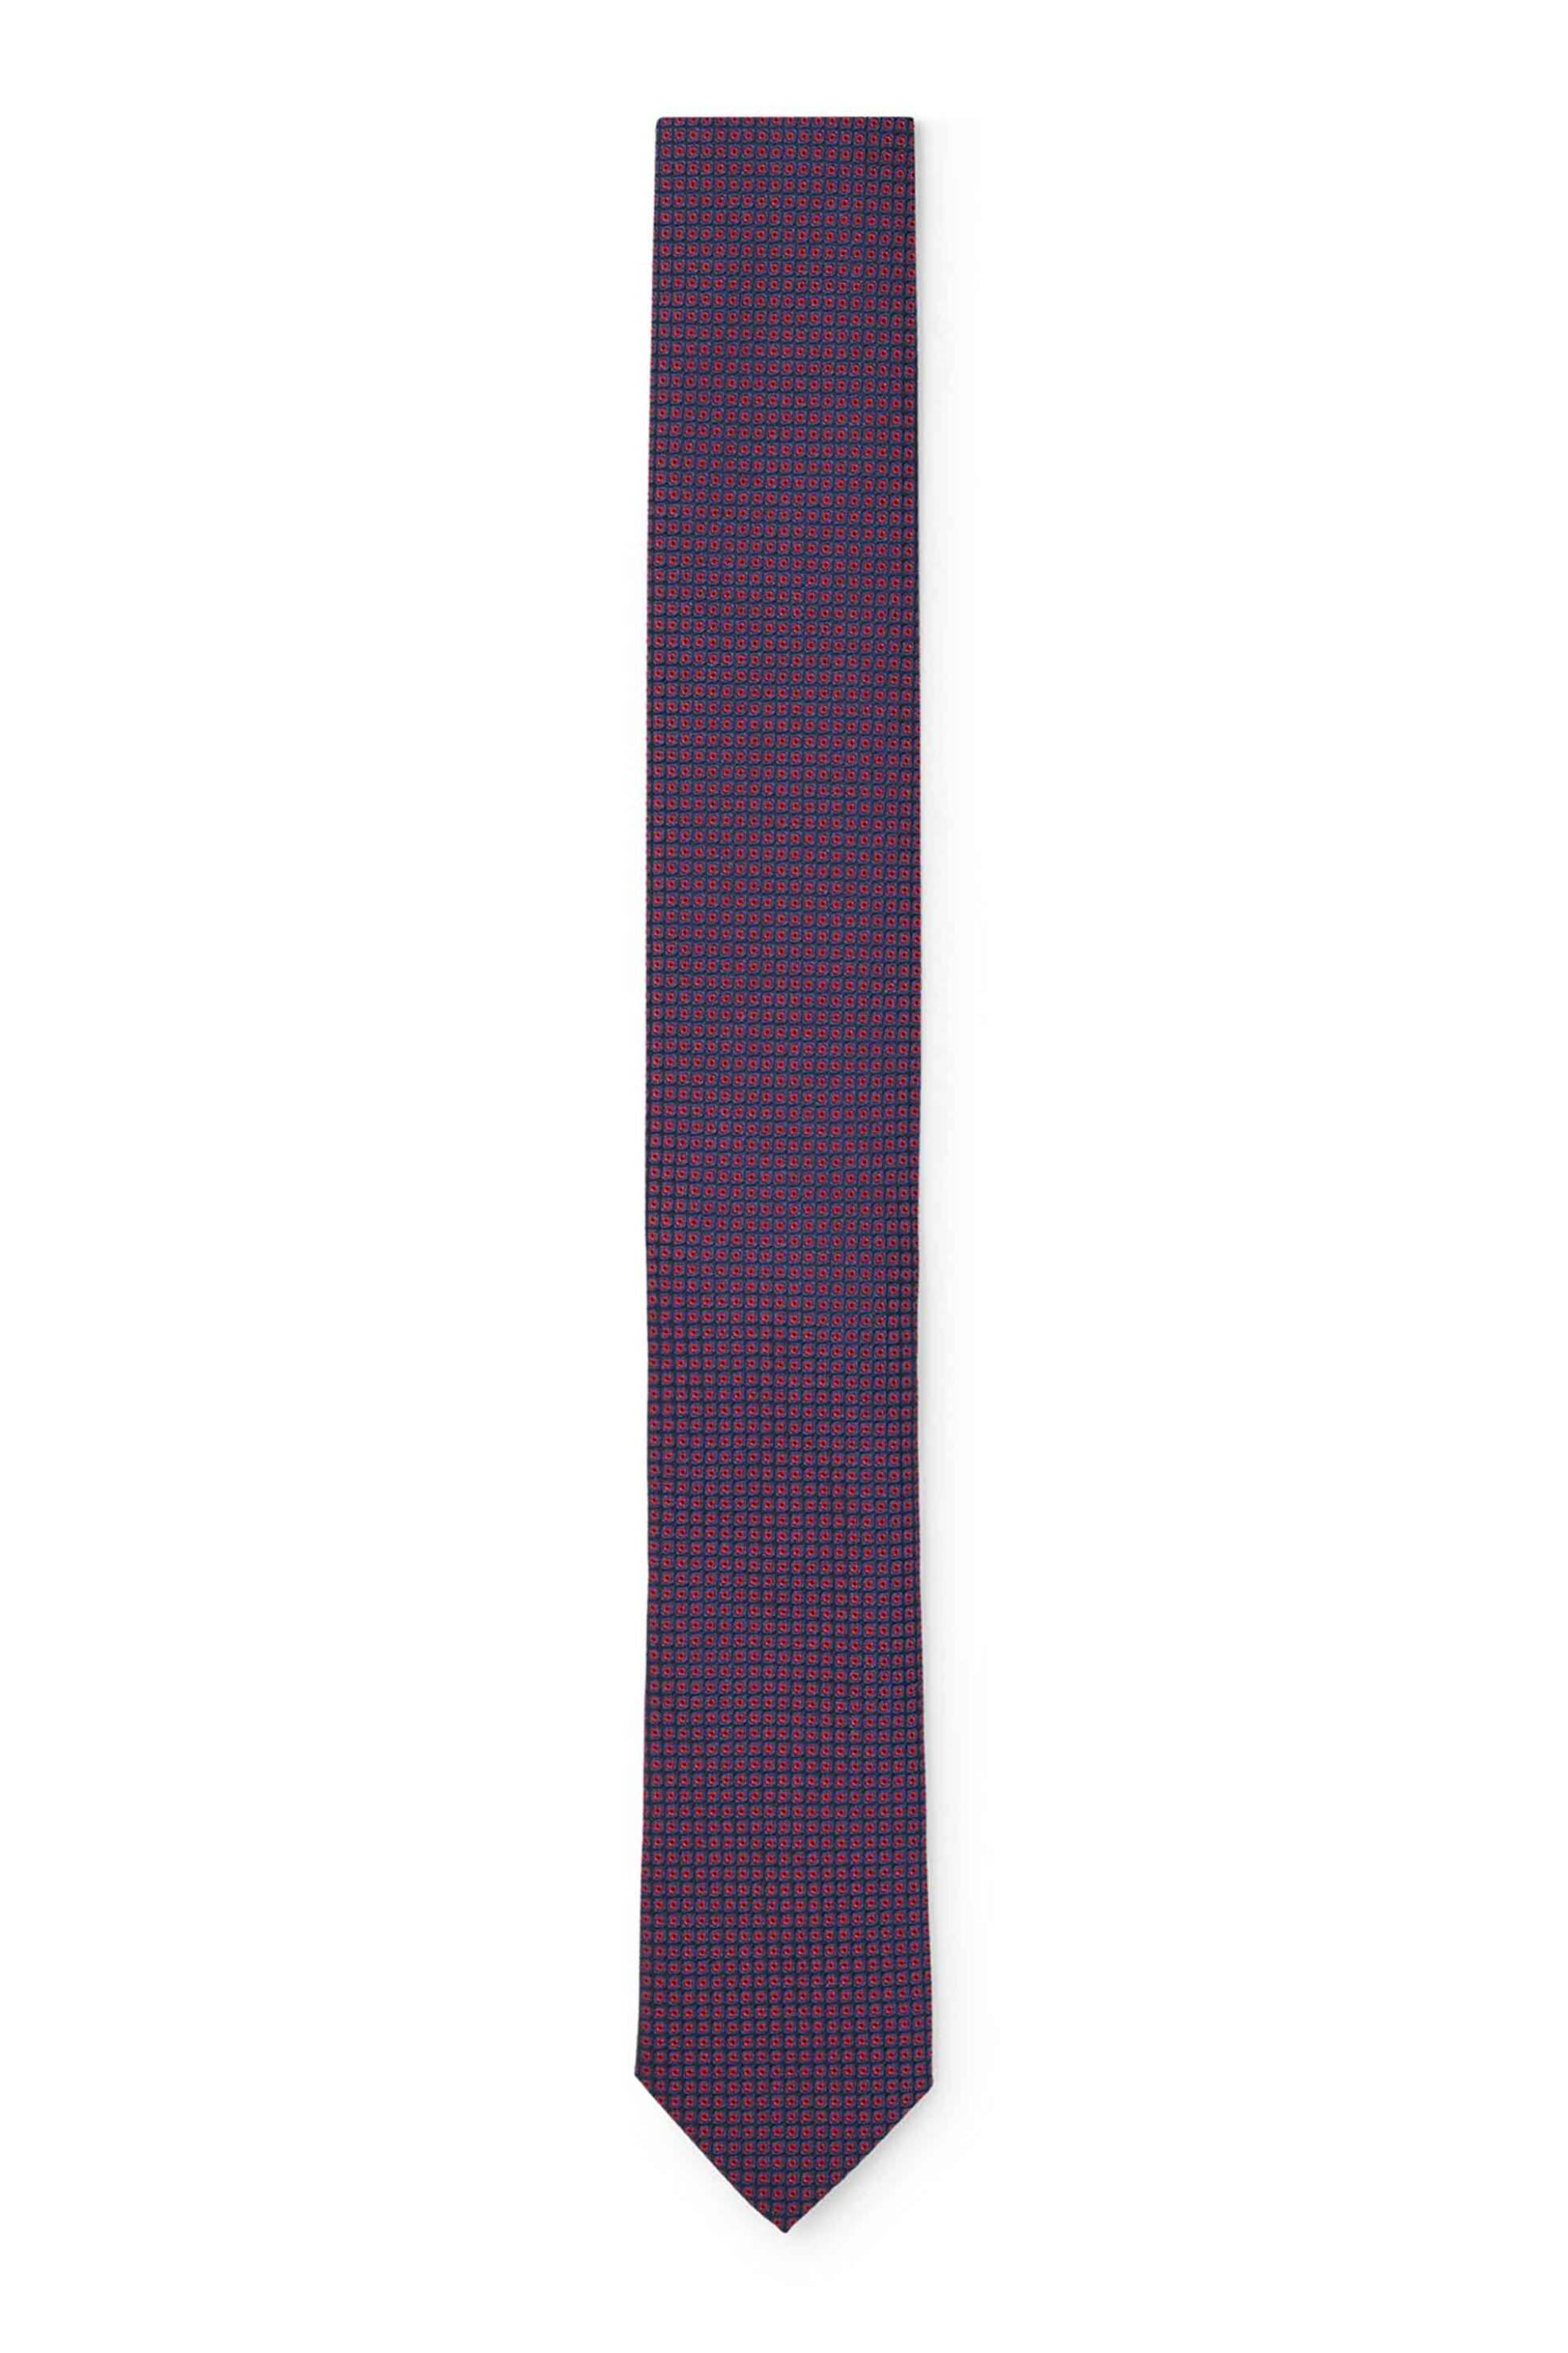 Ανδρική Μόδα > Ανδρικά Αξεσουάρ > Ανδρικές Γραβάτες & Παπιγιόν Hugo Boss ανδρική μεταξωτή γραβάτα με all-over micro squares & dots - 50509032 Μοβ